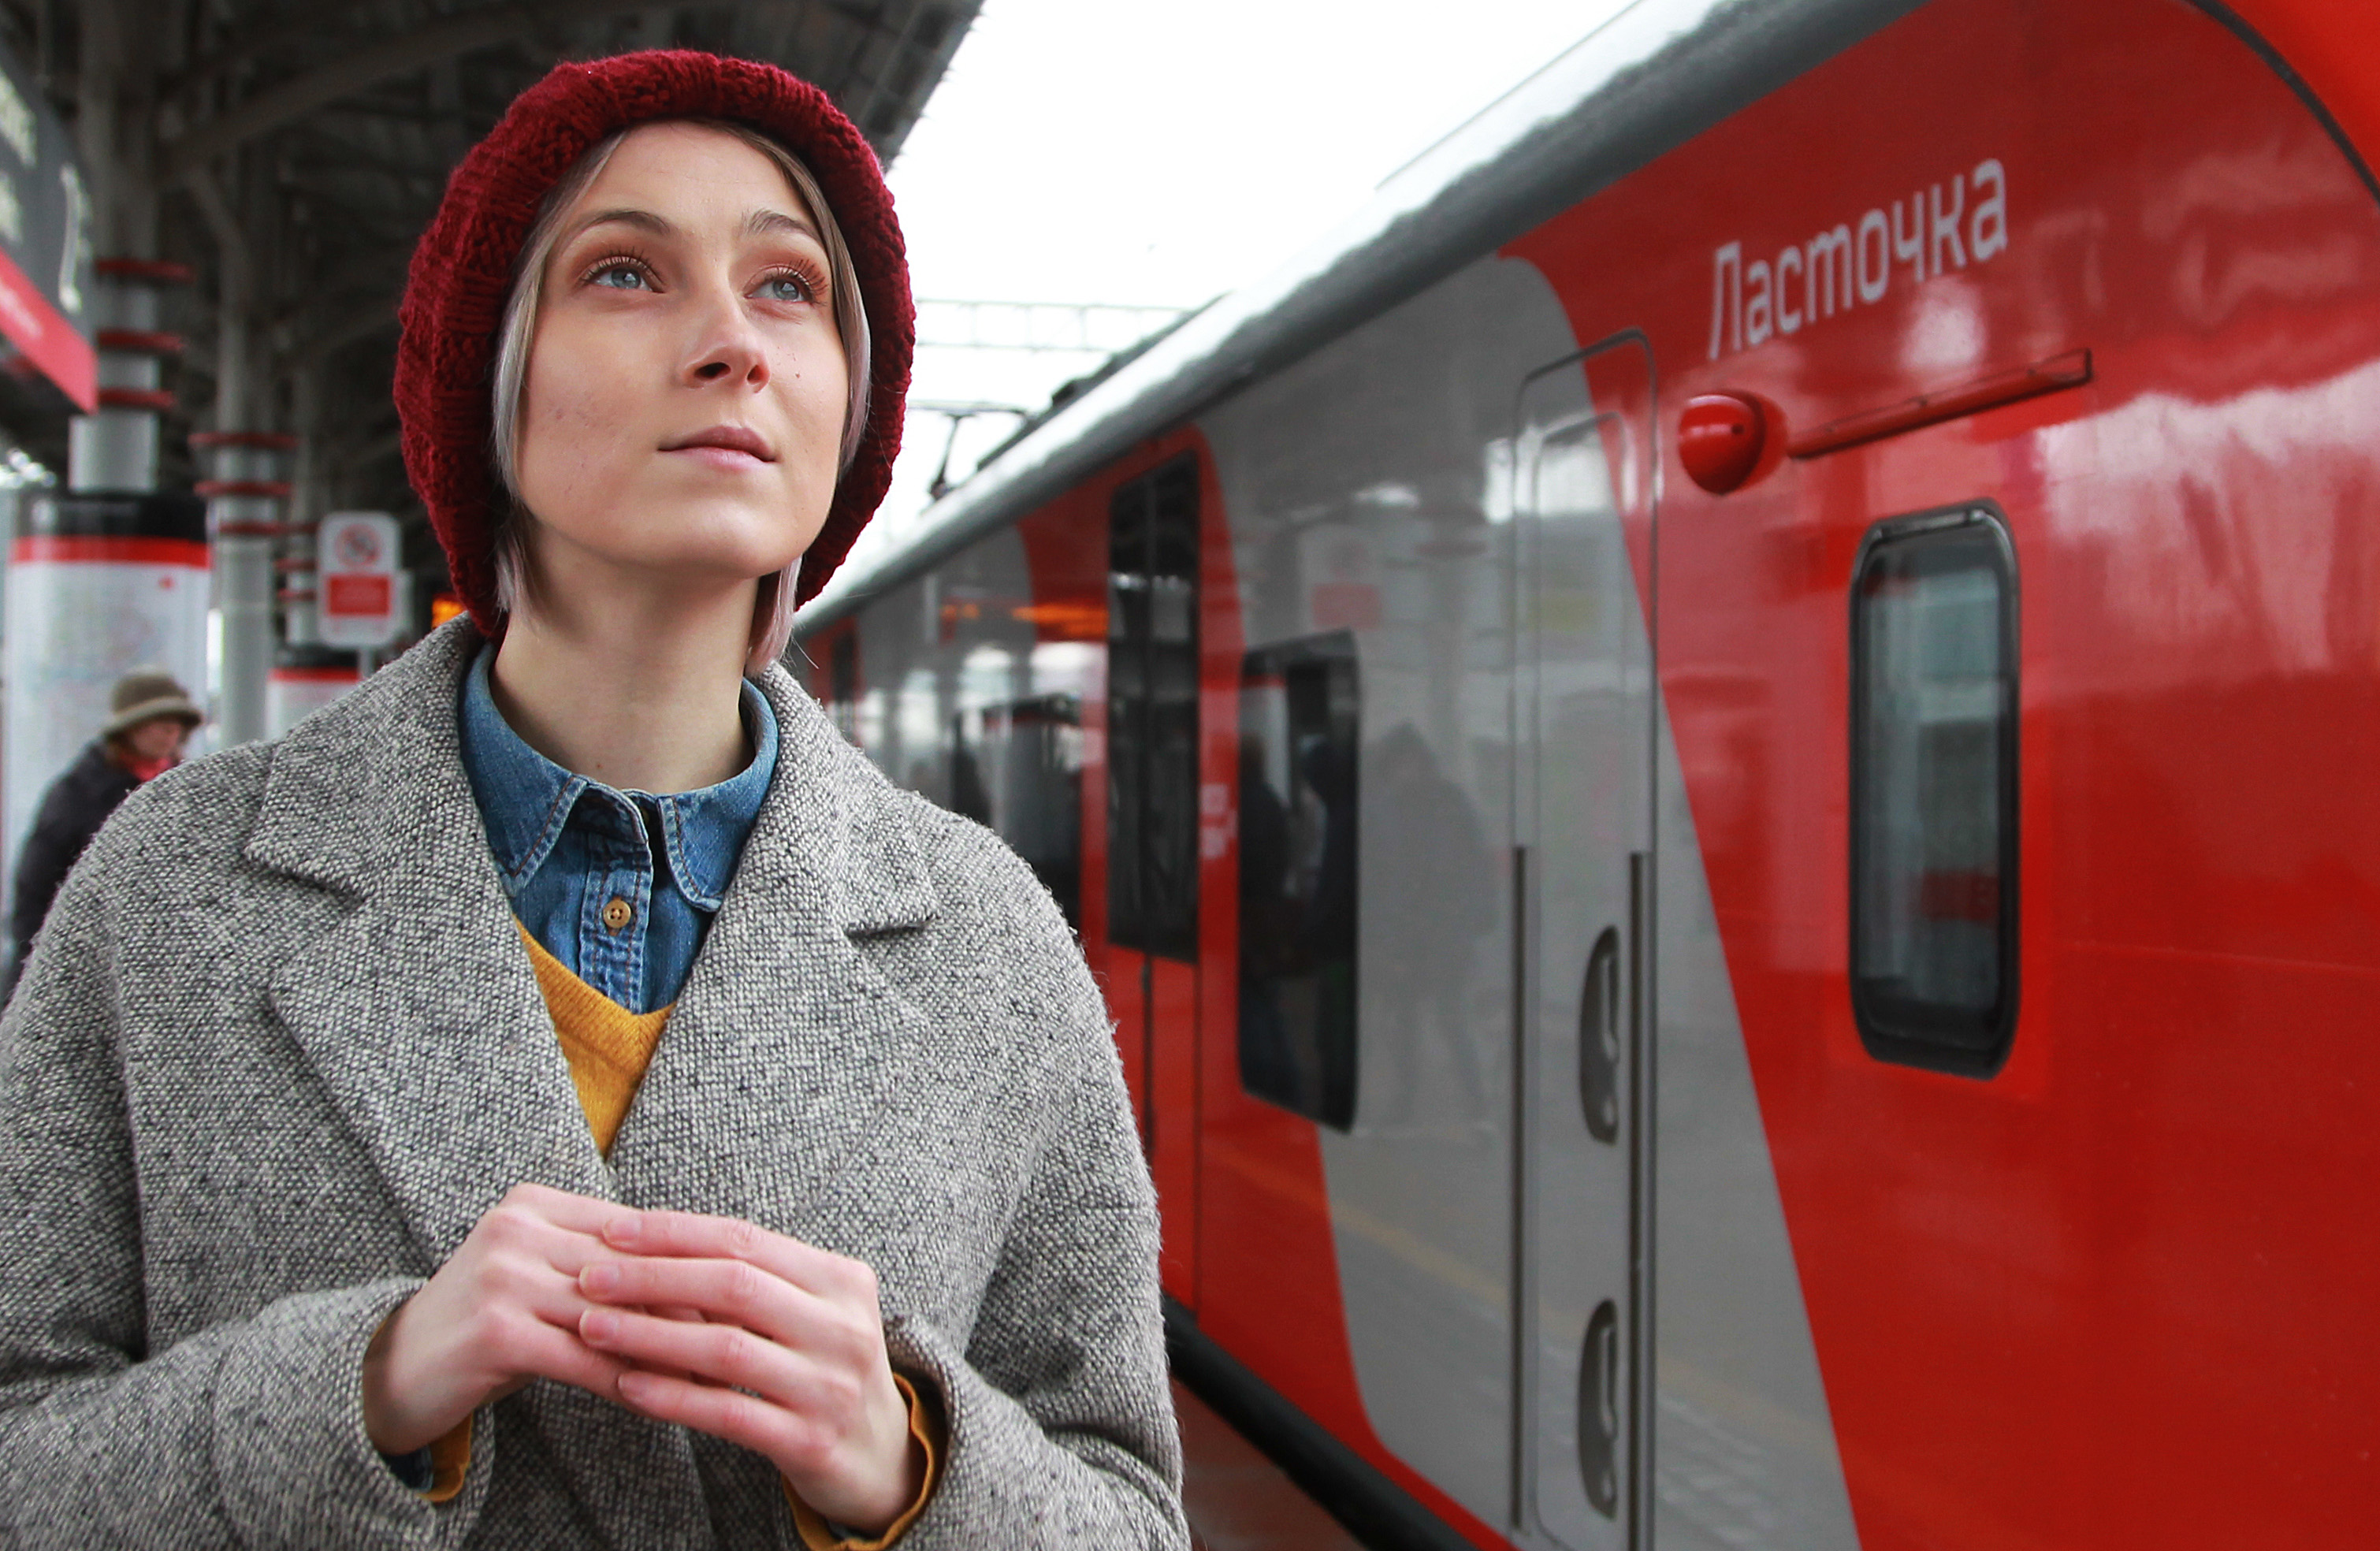 Пассажирам рекомендуют пользоваться соседними станциями. Фото: Наталия Нечаева